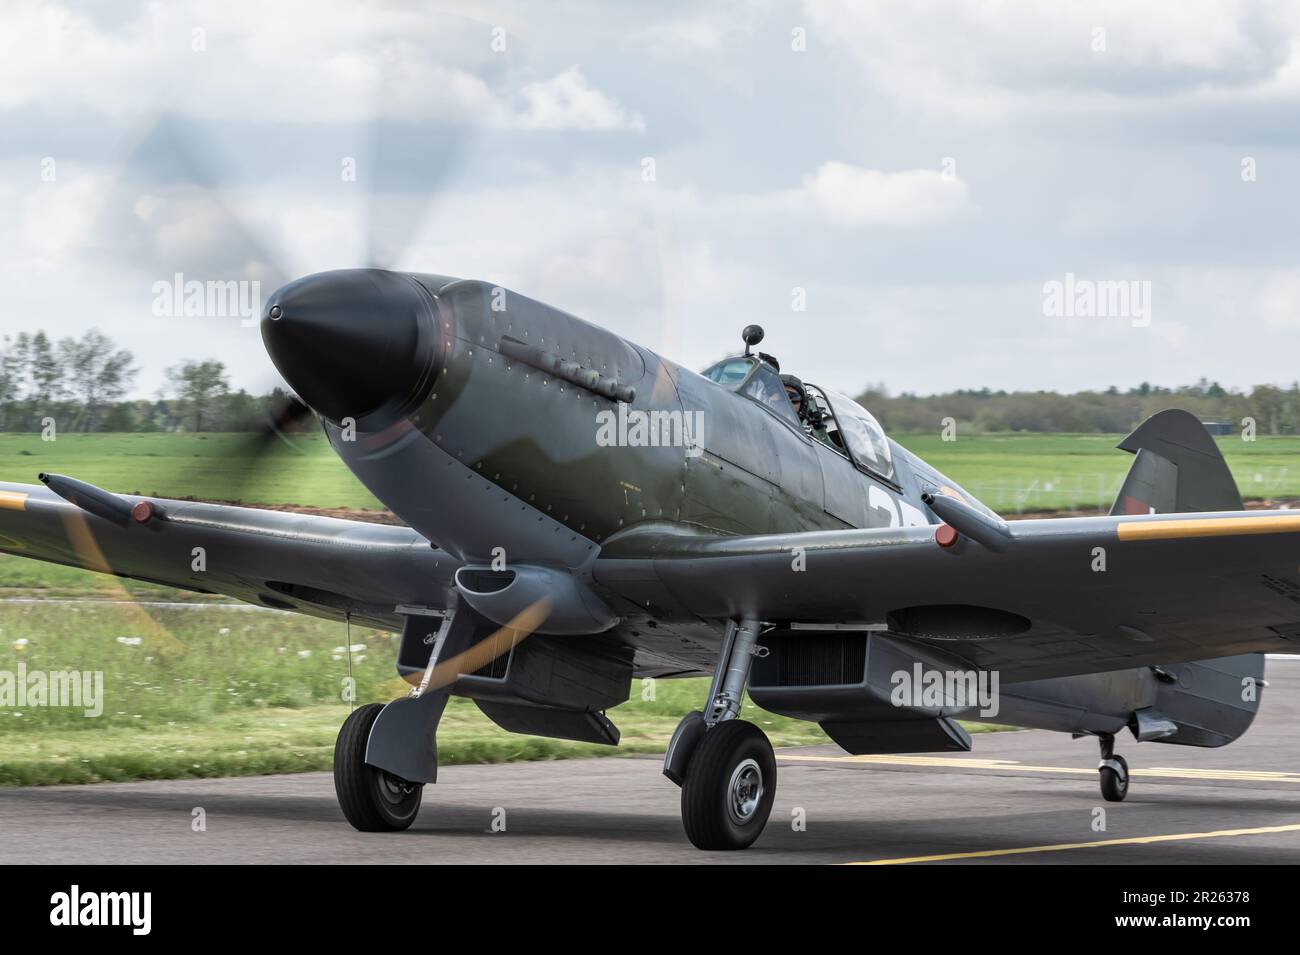 Das Supermarine Spitfire ist ein britisches einsitzendes Kampfflugzeug, das von der Royal Air Force und anderen alliierten Ländern während des Zweiten Weltkriegs eingesetzt wurde. Stockfoto